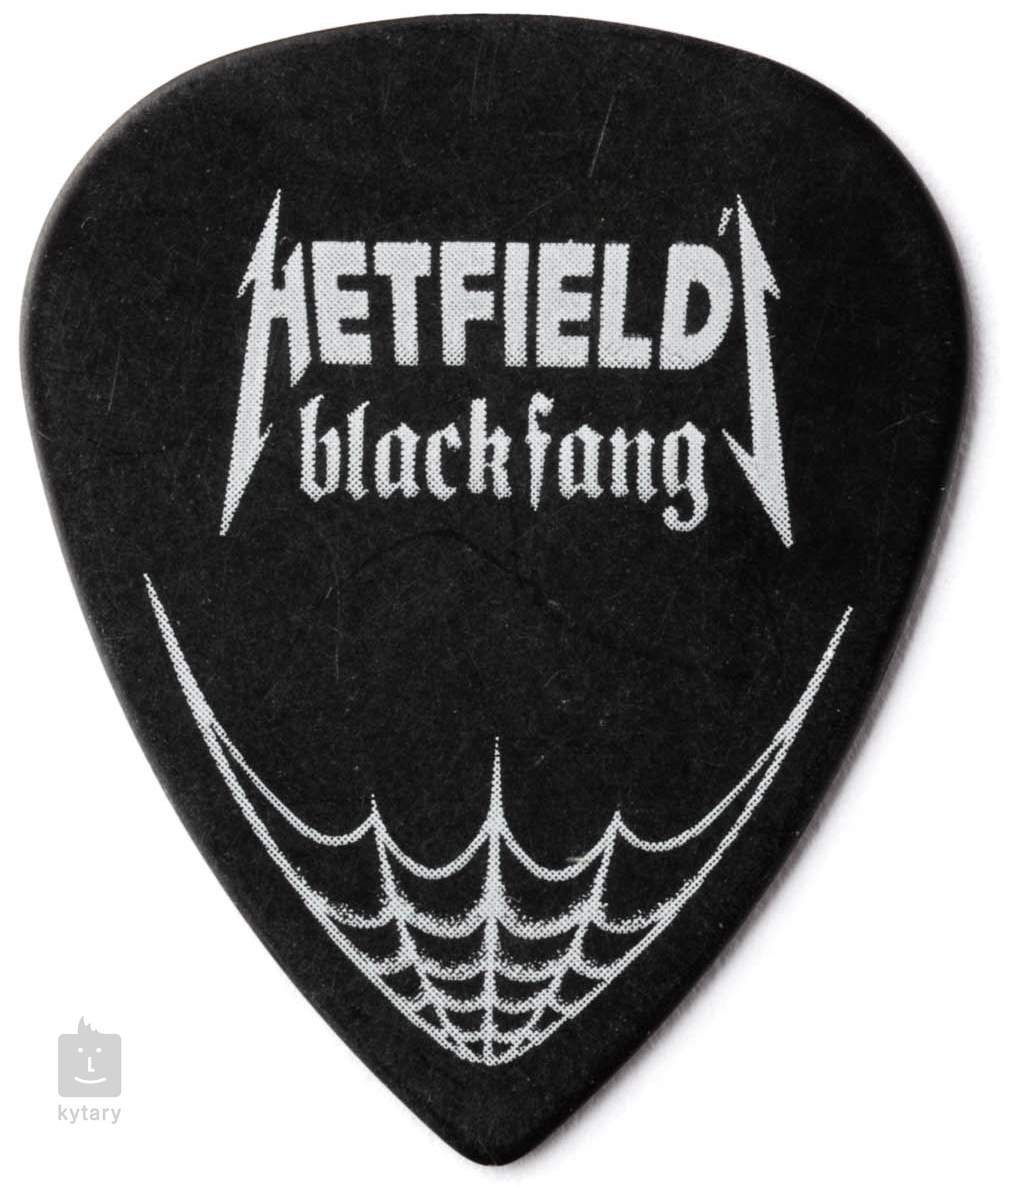 DUNLOP Hetfield Black Fang 0.73 Médiator Signature